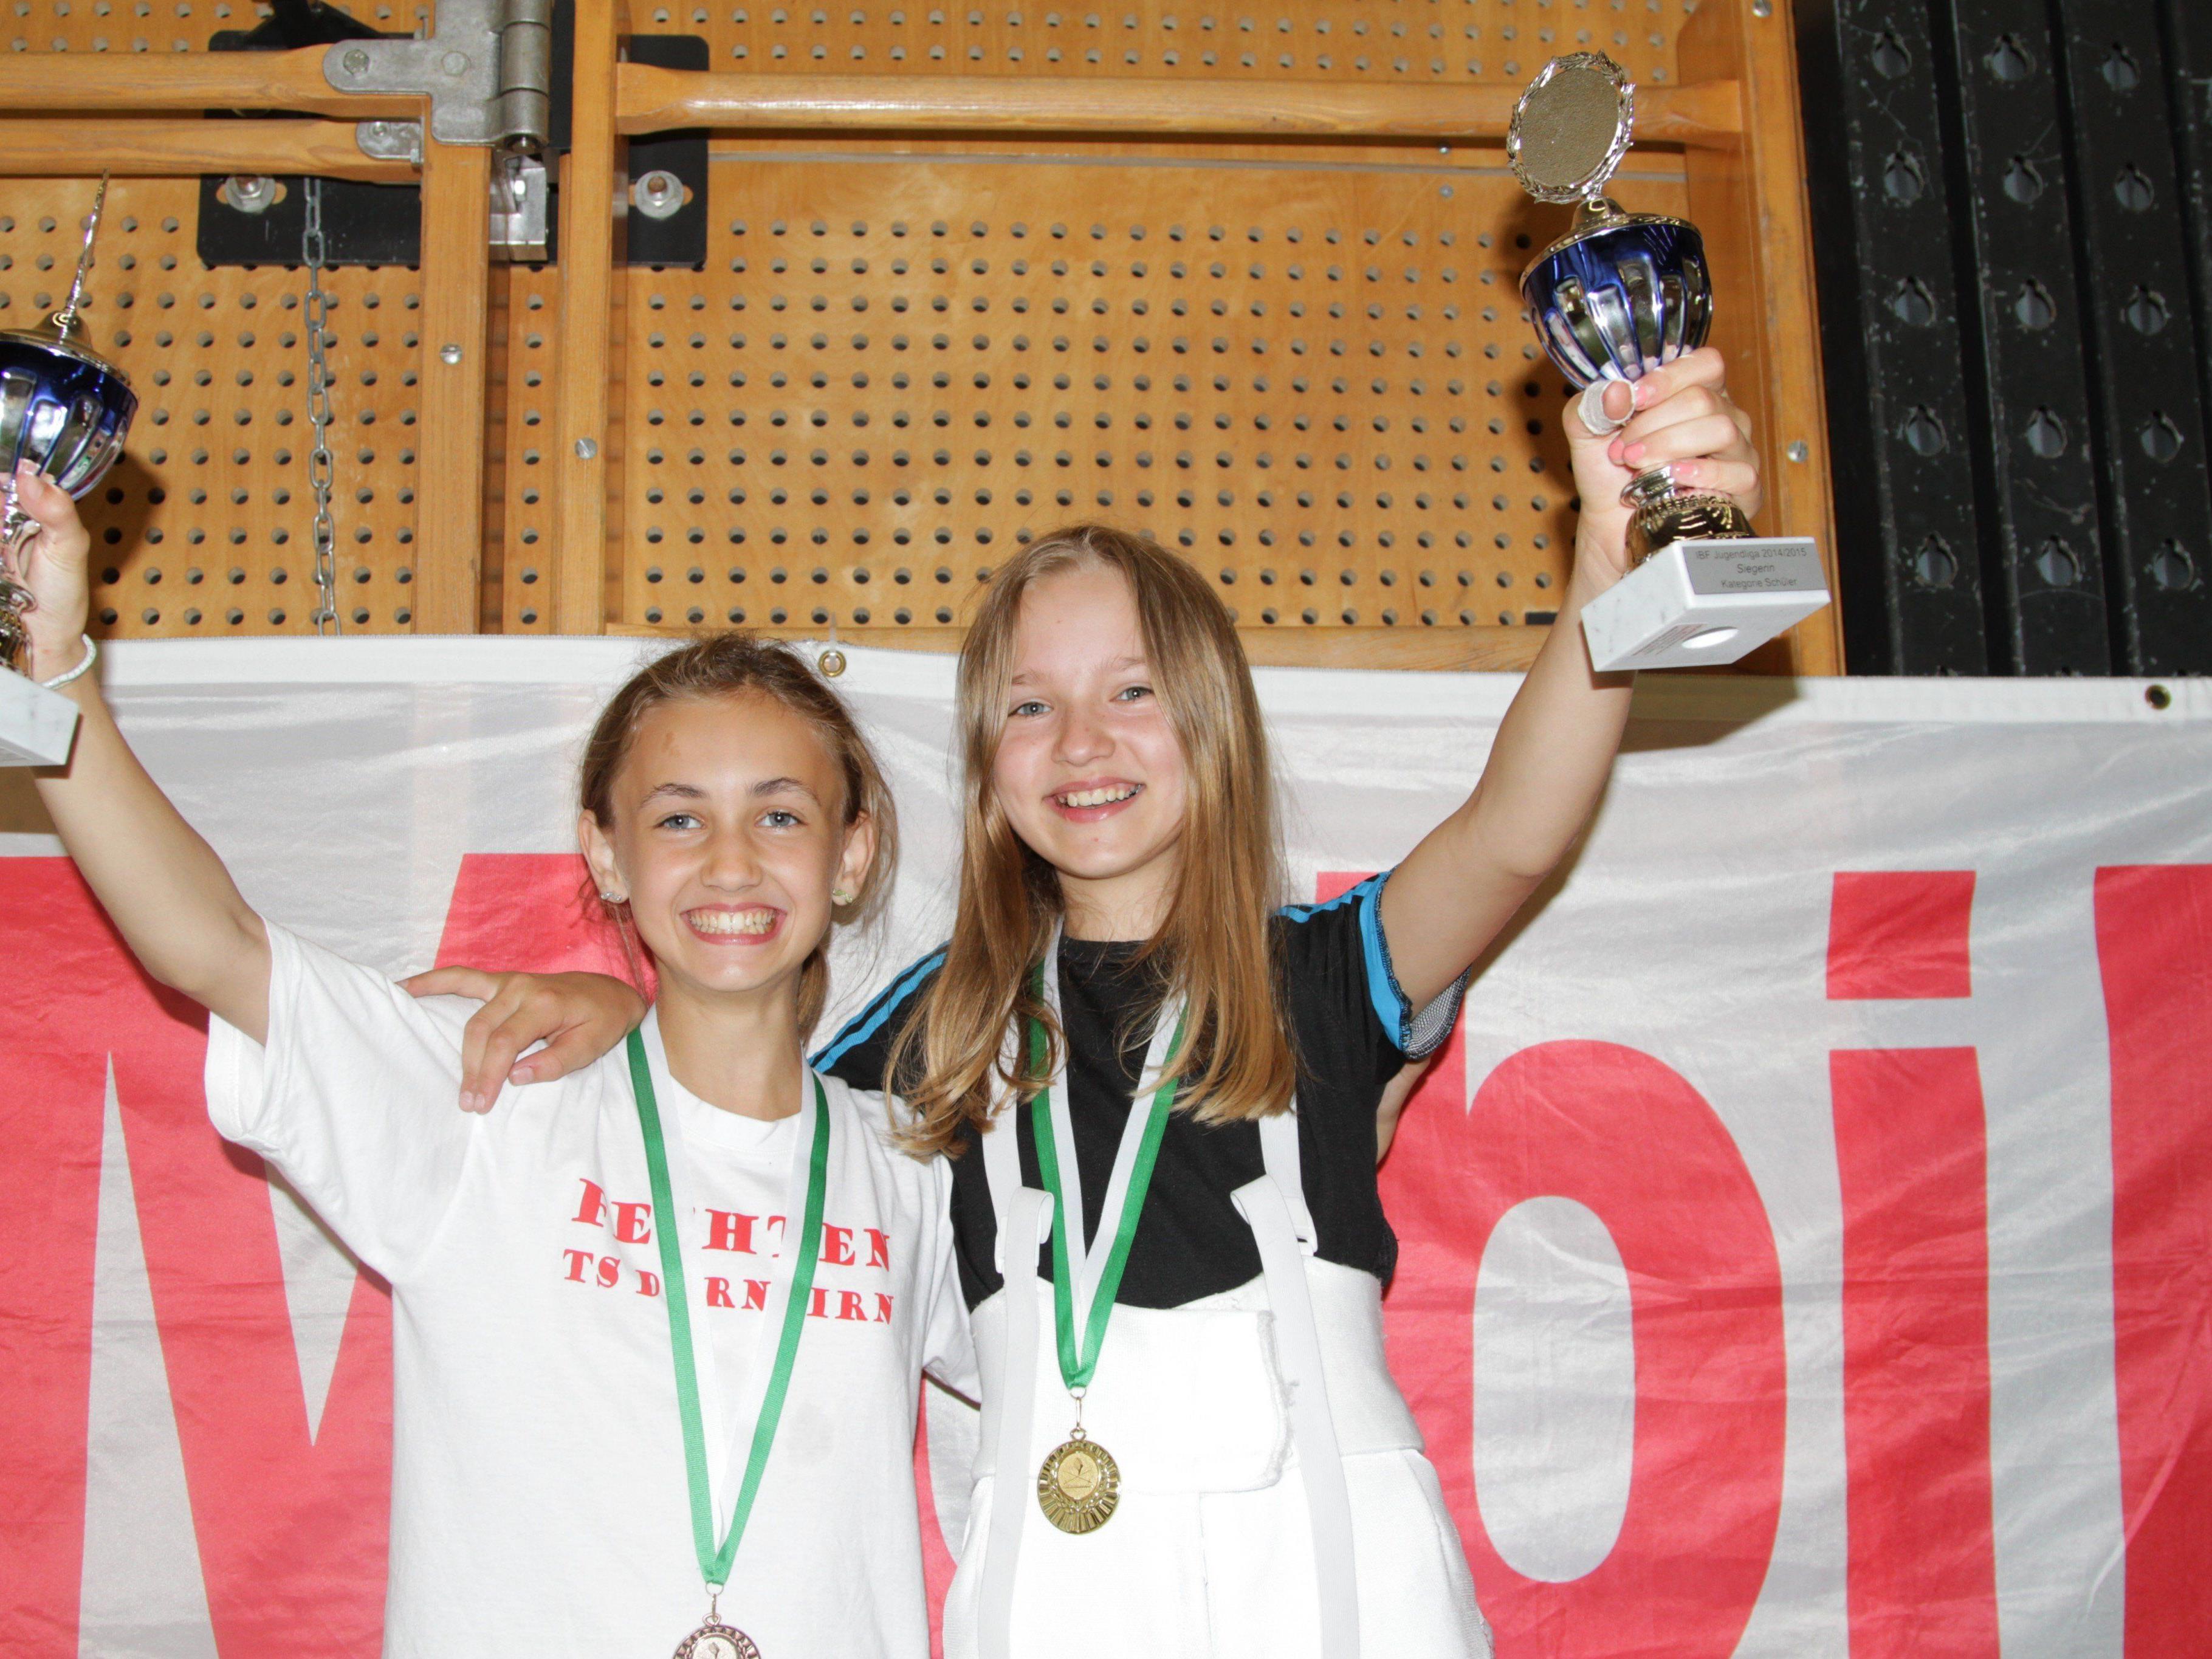 Die jungen Fechterinnen glänzten beim Turnier in St. Gallen.